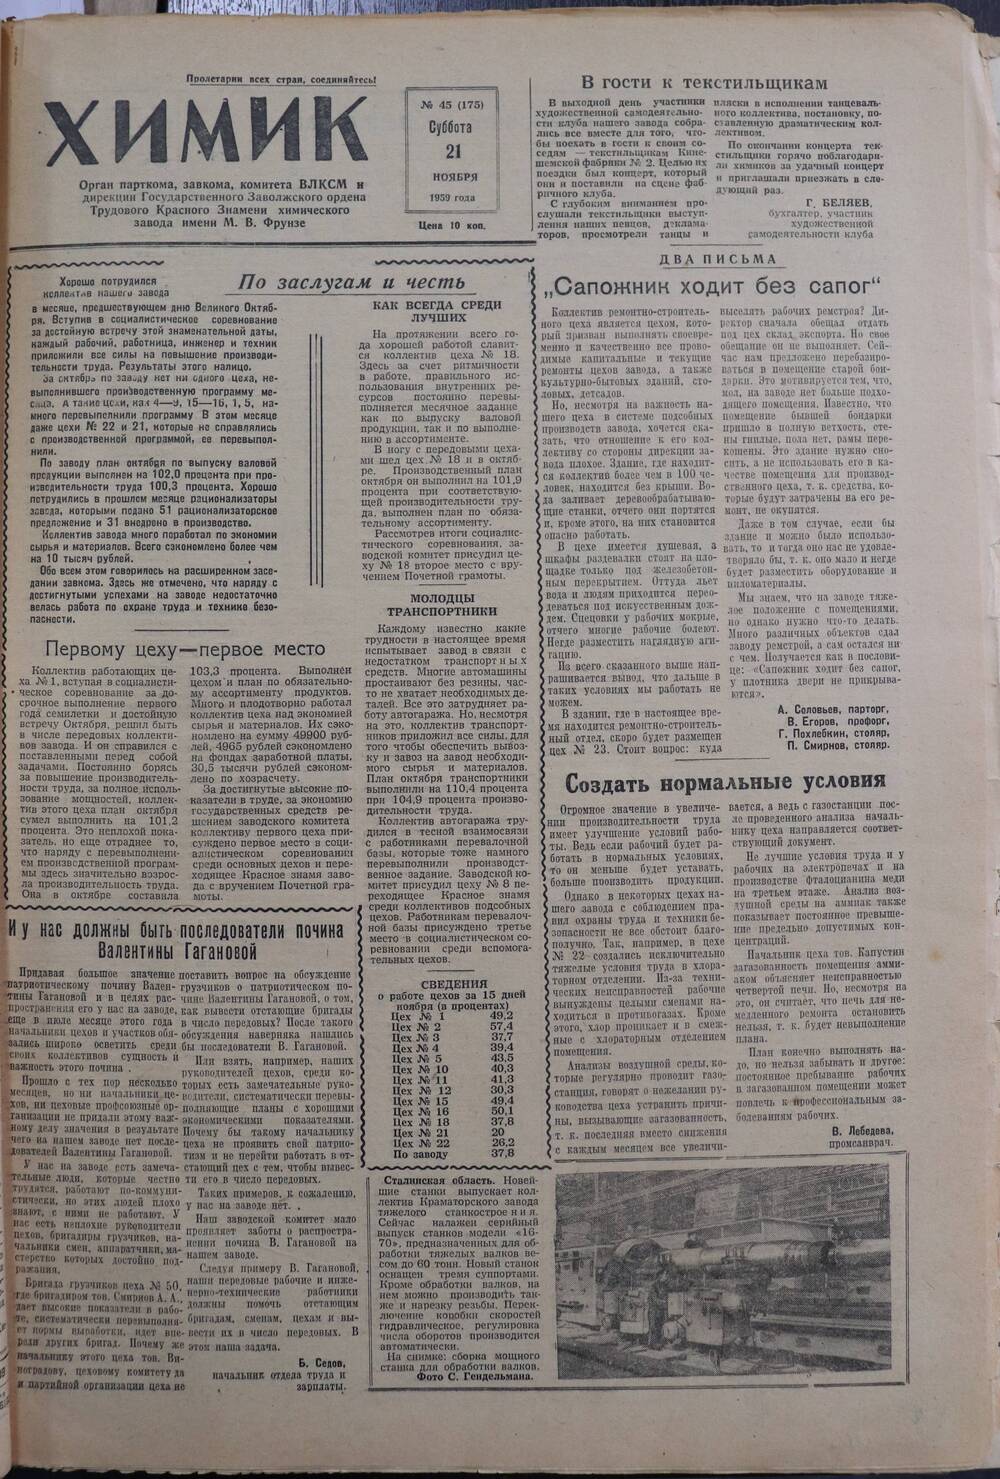 Газета «Химик» № 45 от 21 ноября 1959 года.